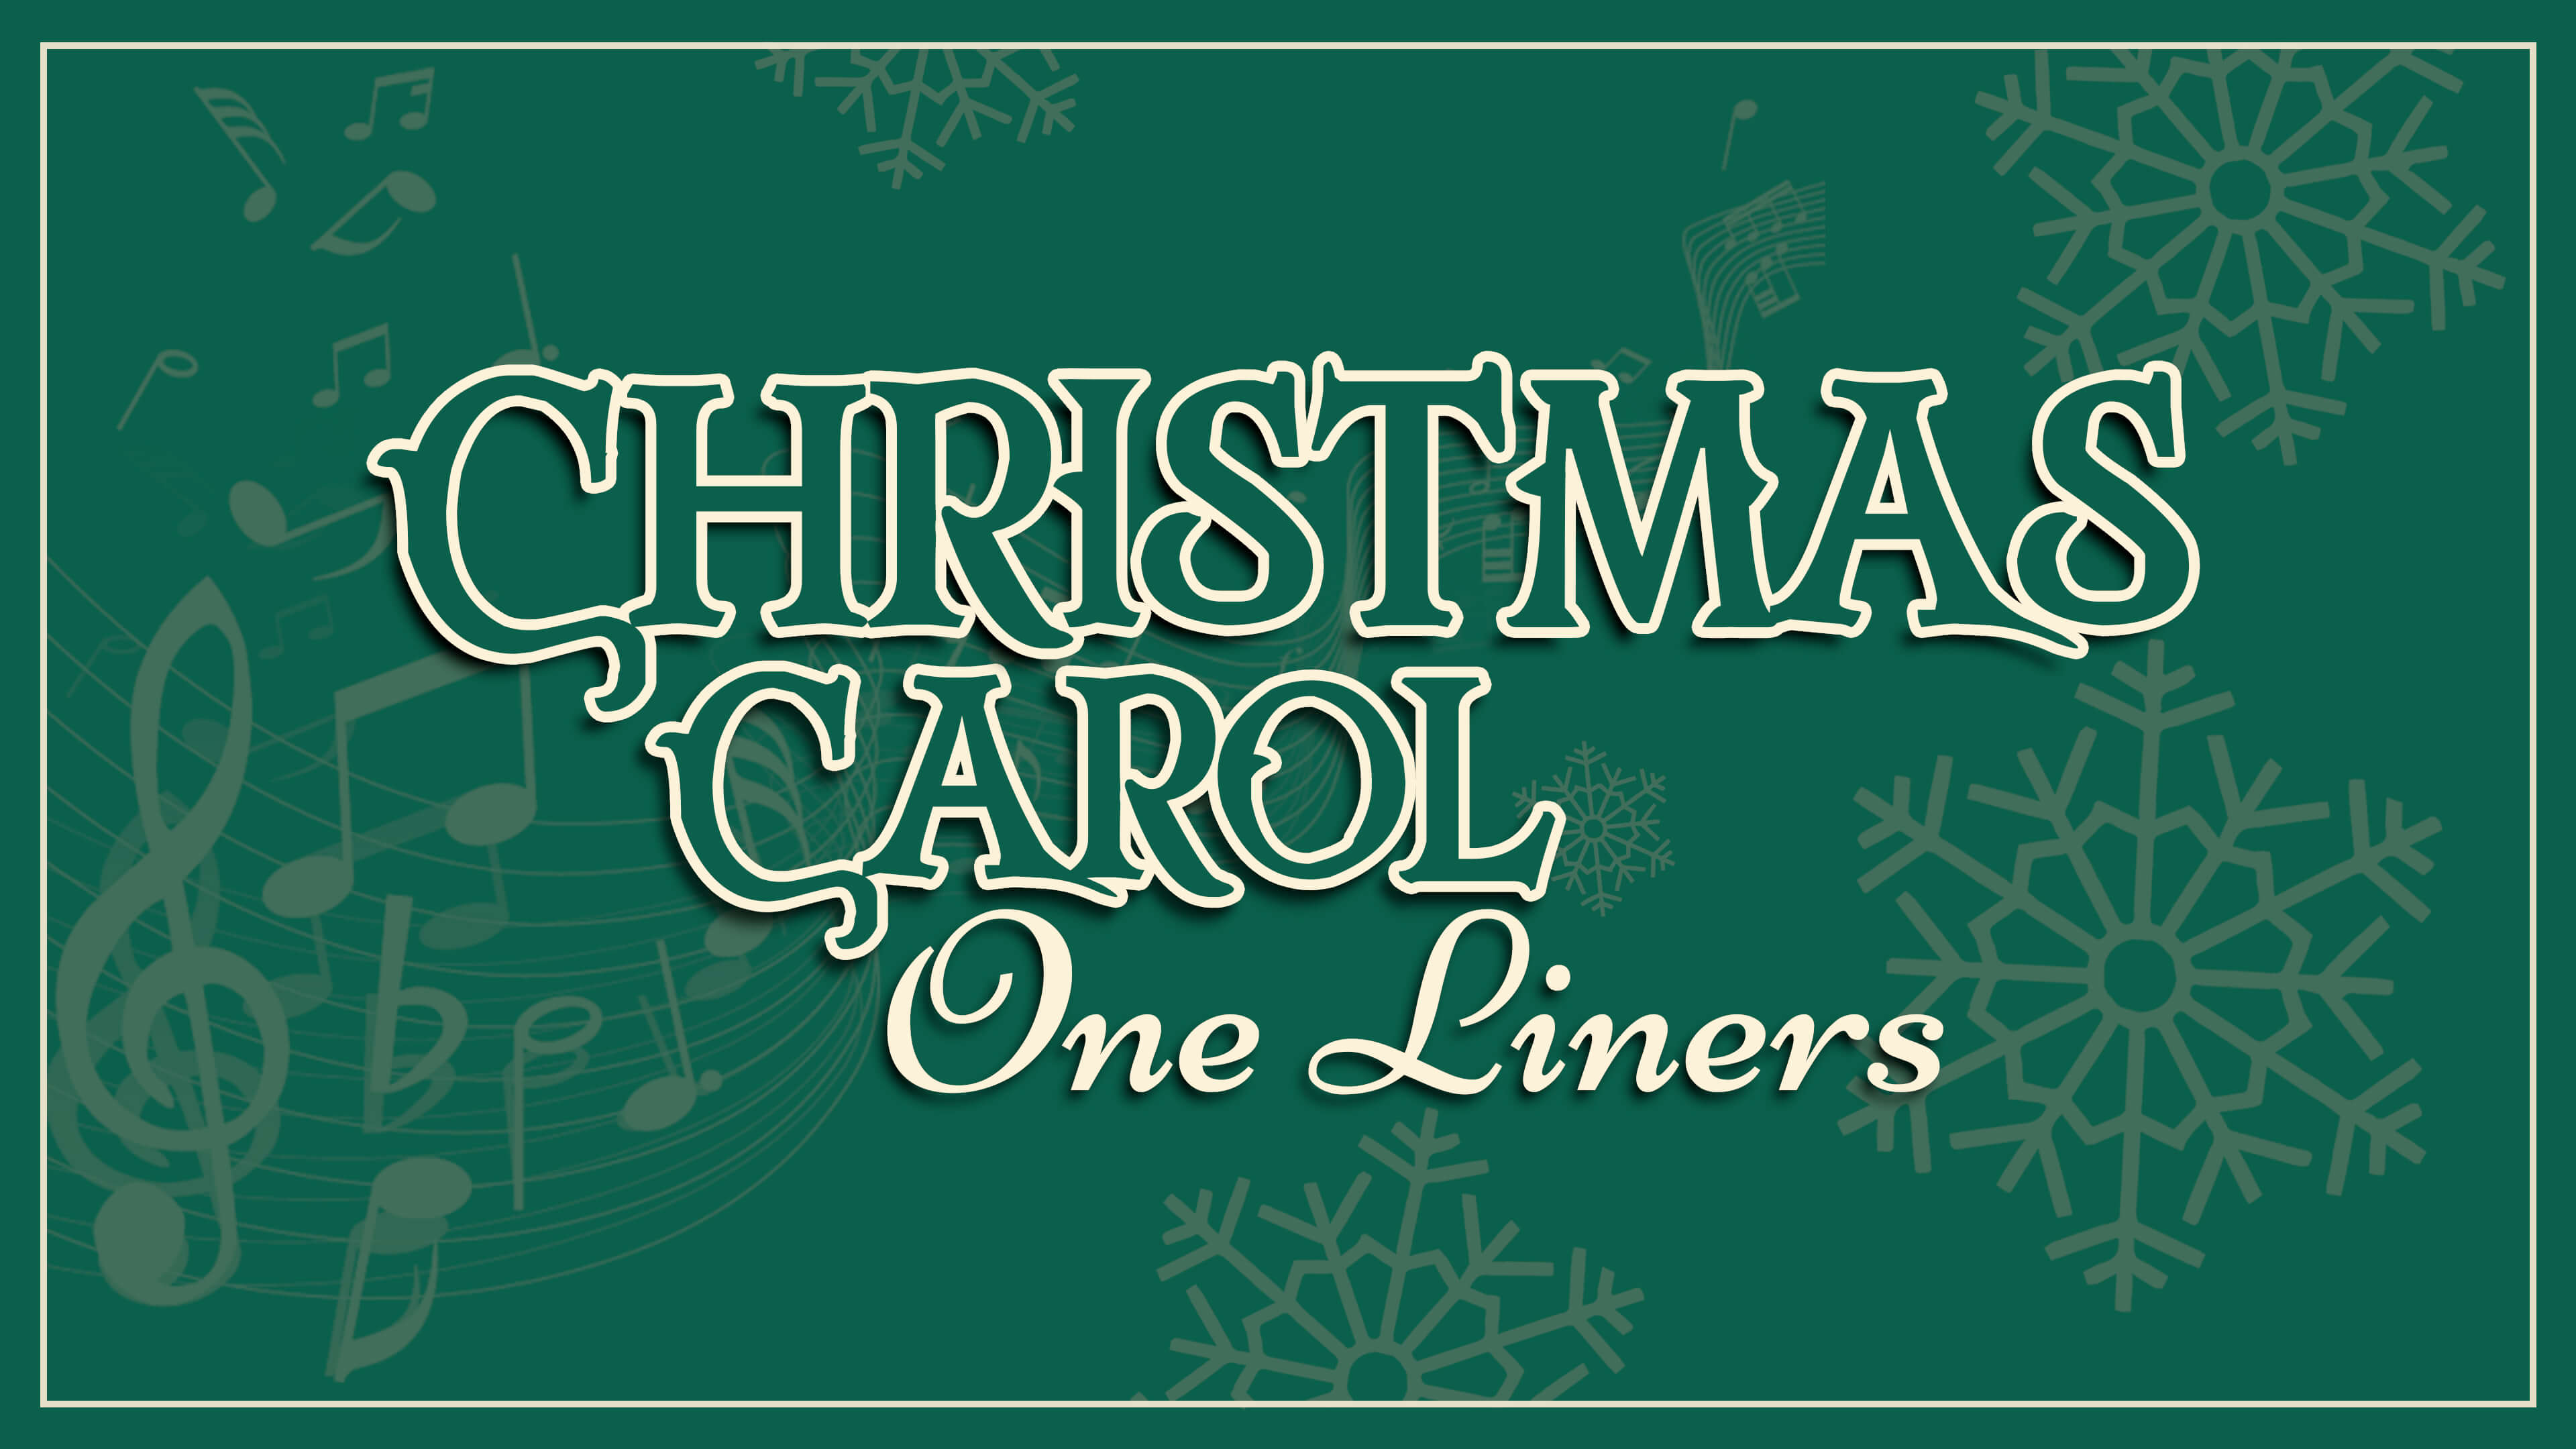 Christmas Carol One-liners